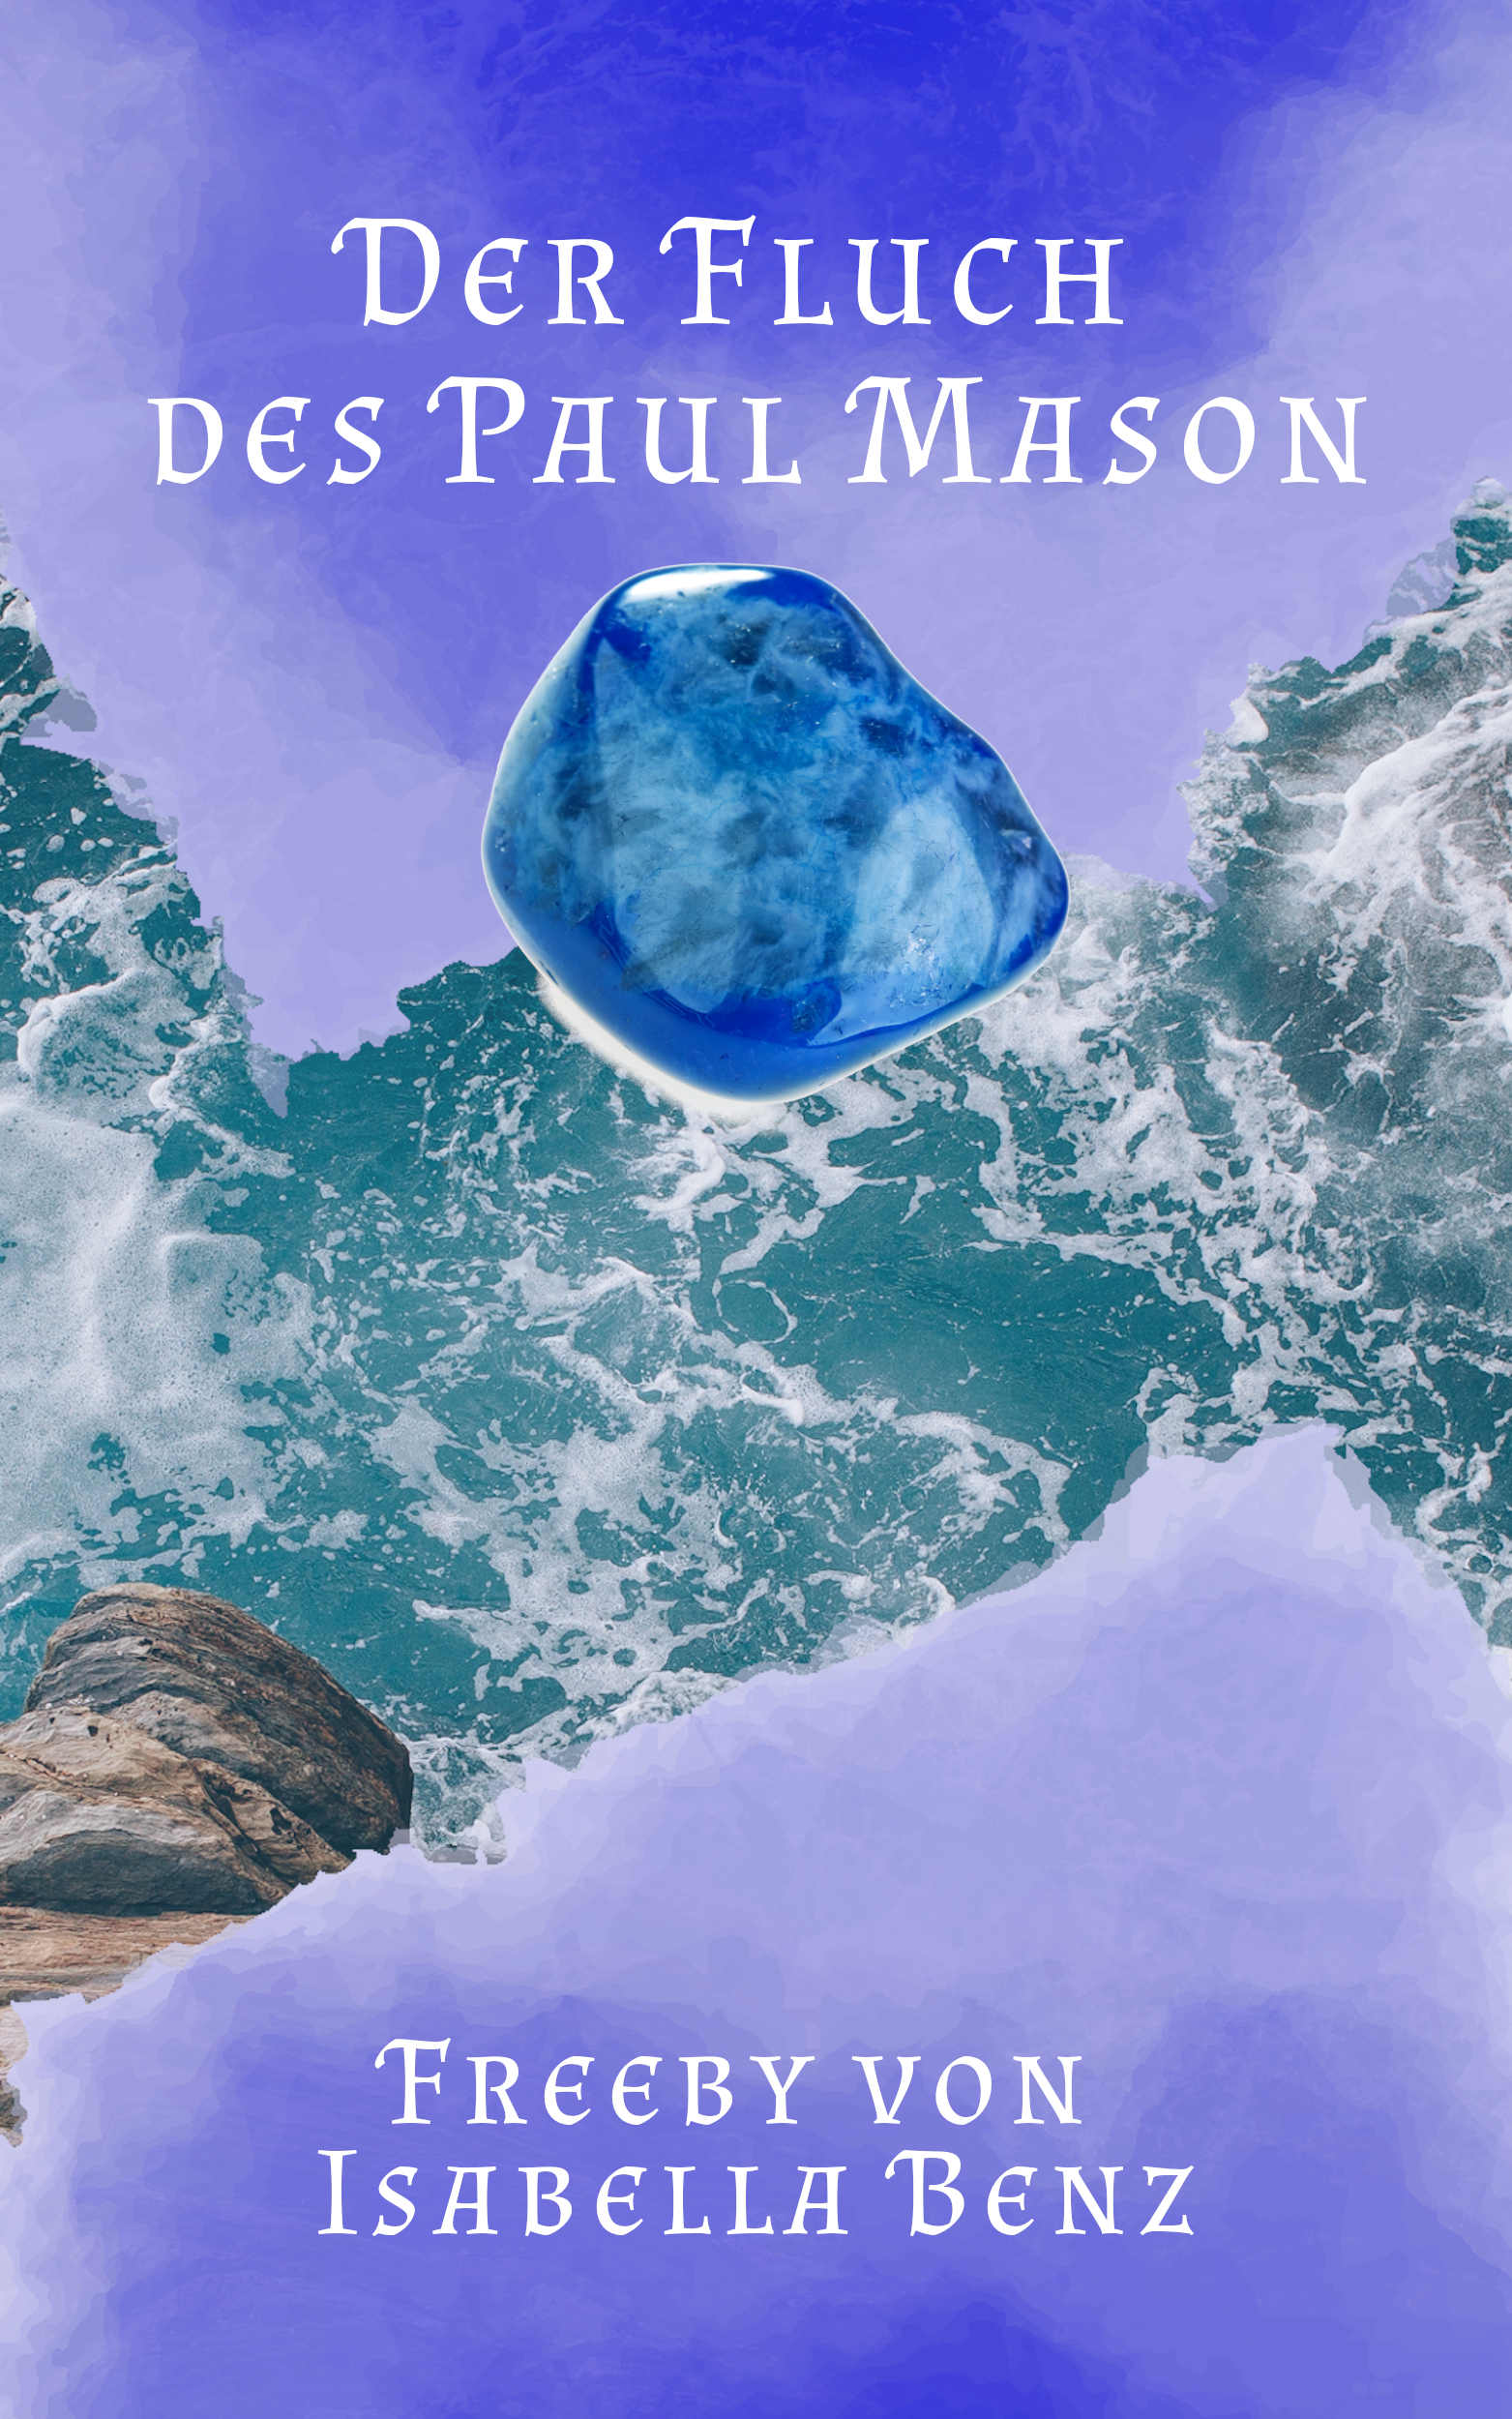 Cover Freeby: Oben und unten ist jeweils blauer Grund, der in ein Meer hineinragt. Oben steht der Titel "Der Fluch des Paul Mason", unten "Freeby von Isabella Benz". Unter dem Titel ist ein blauer Achat abgebildet